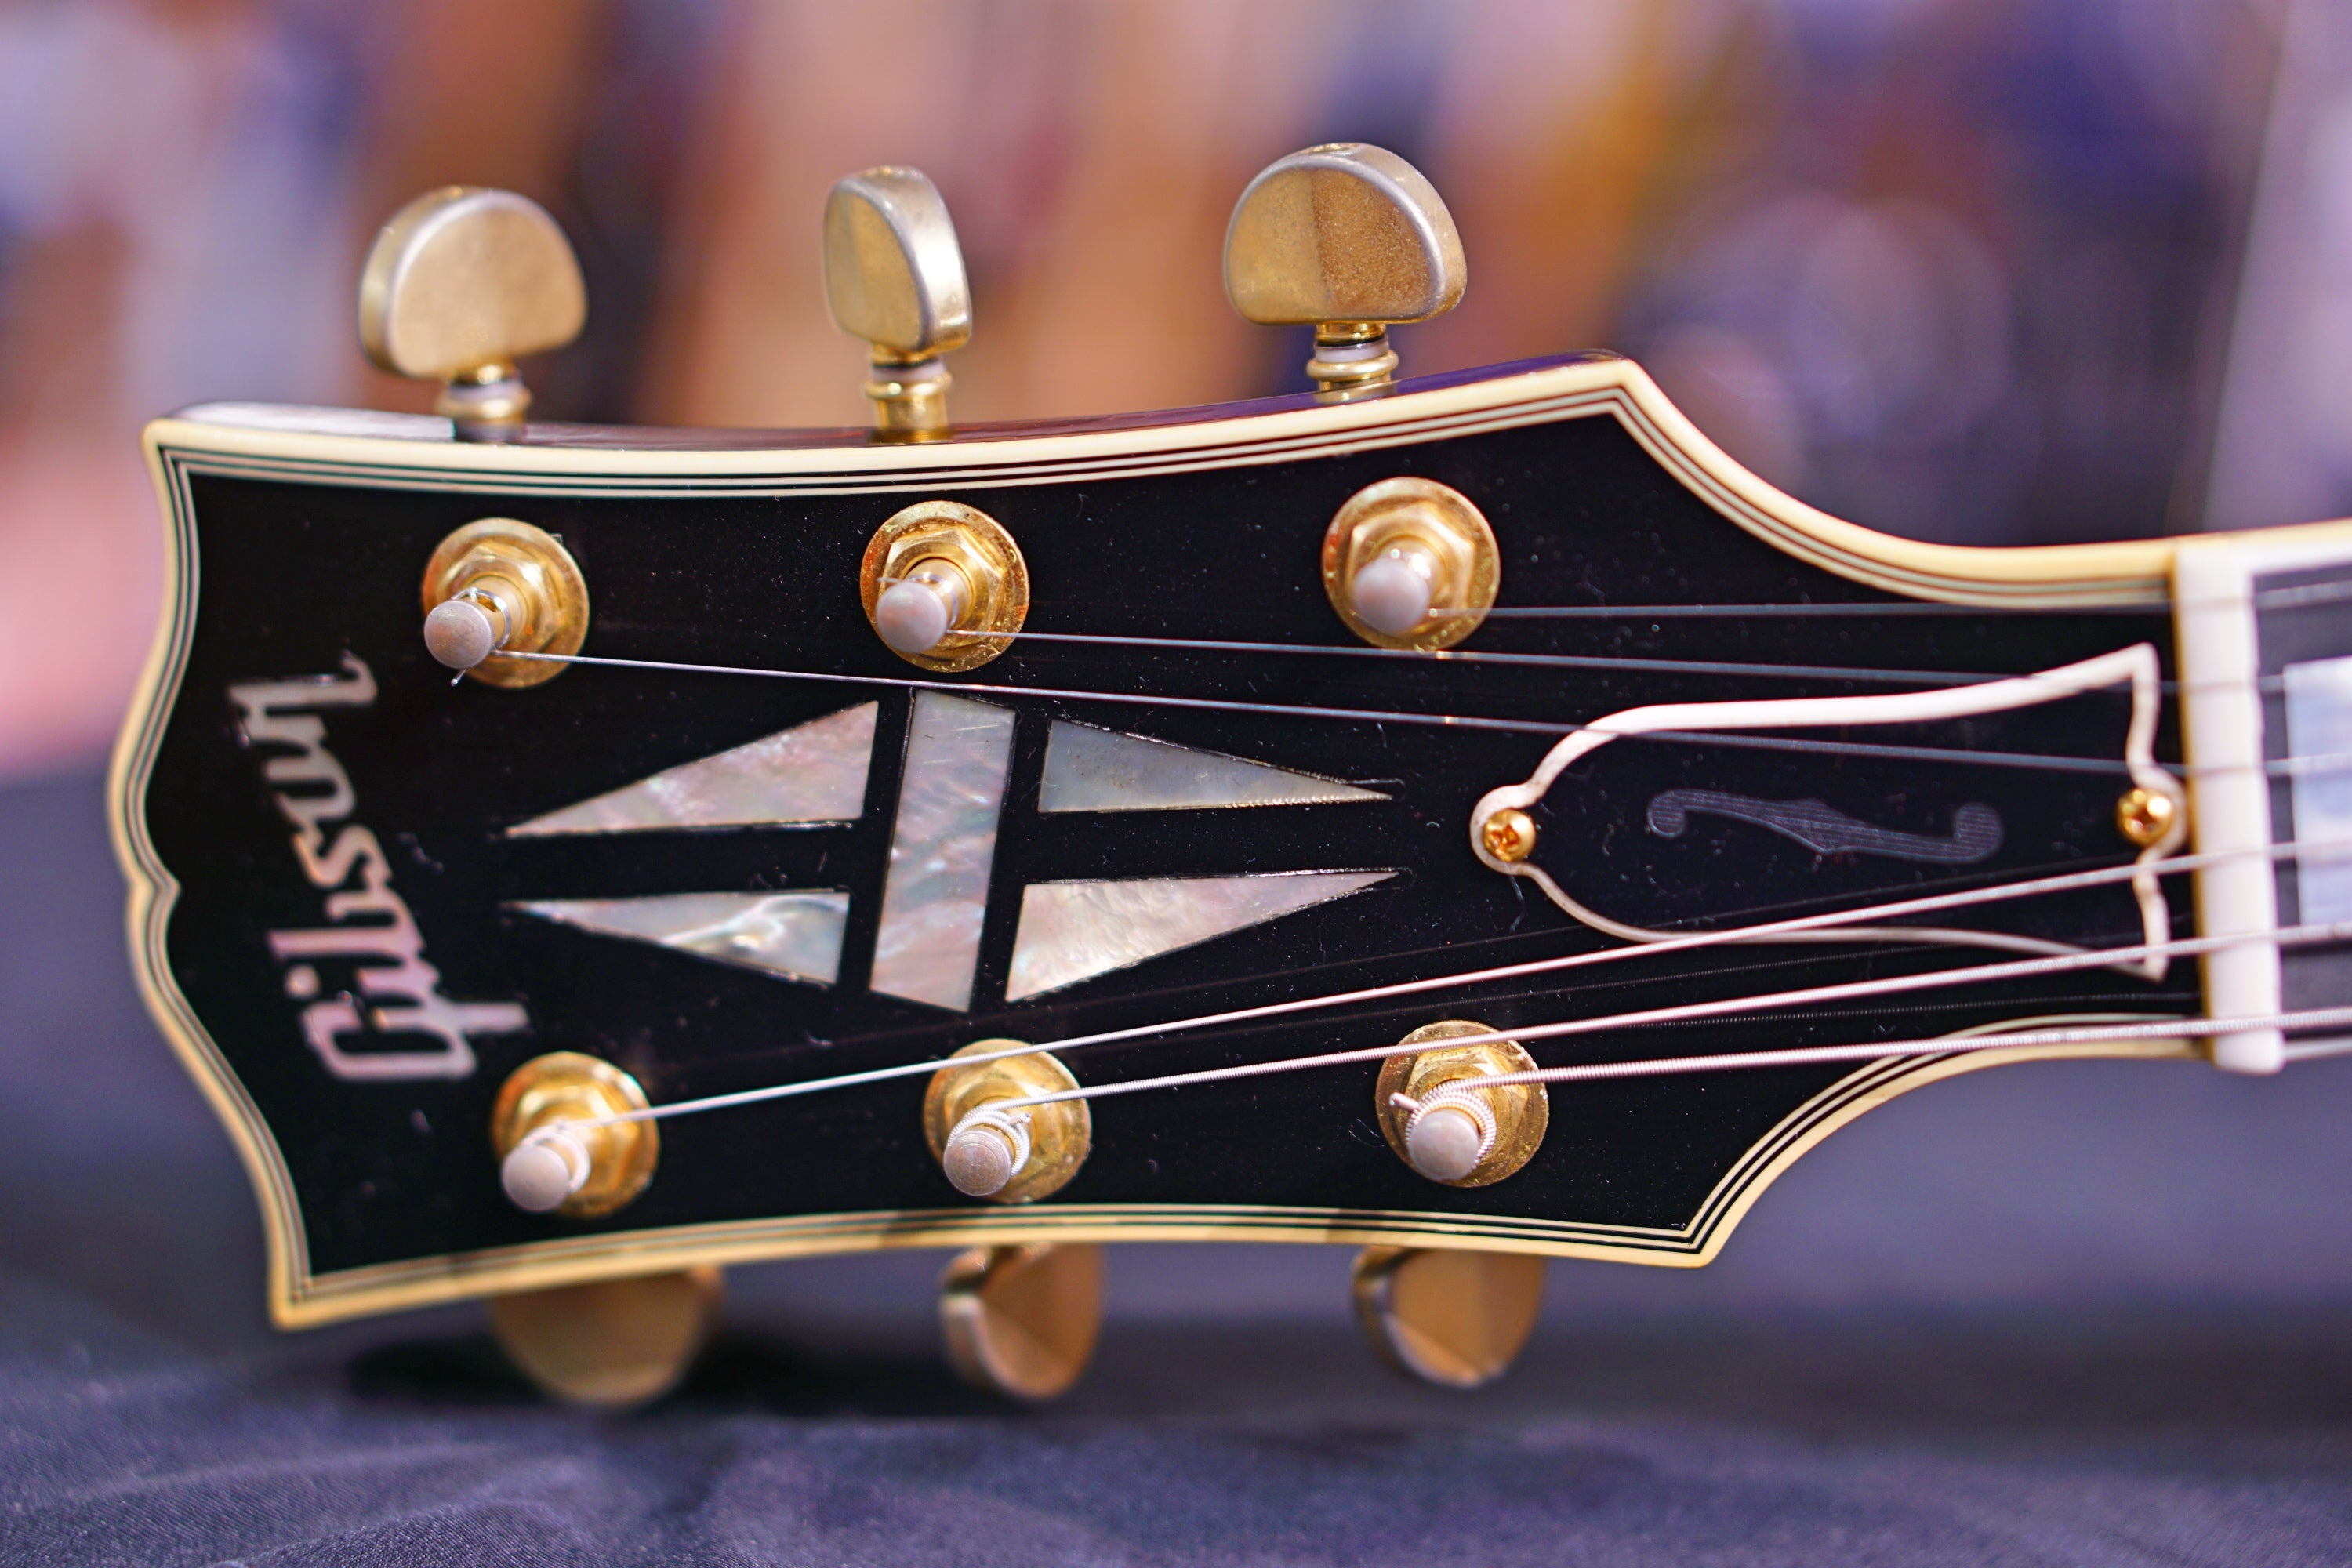 Gibson ES Les Paul Custom Black Beauty VOS ESLPBB15EBGH1 - HIENDGUITAR   GIBSON GUITAR